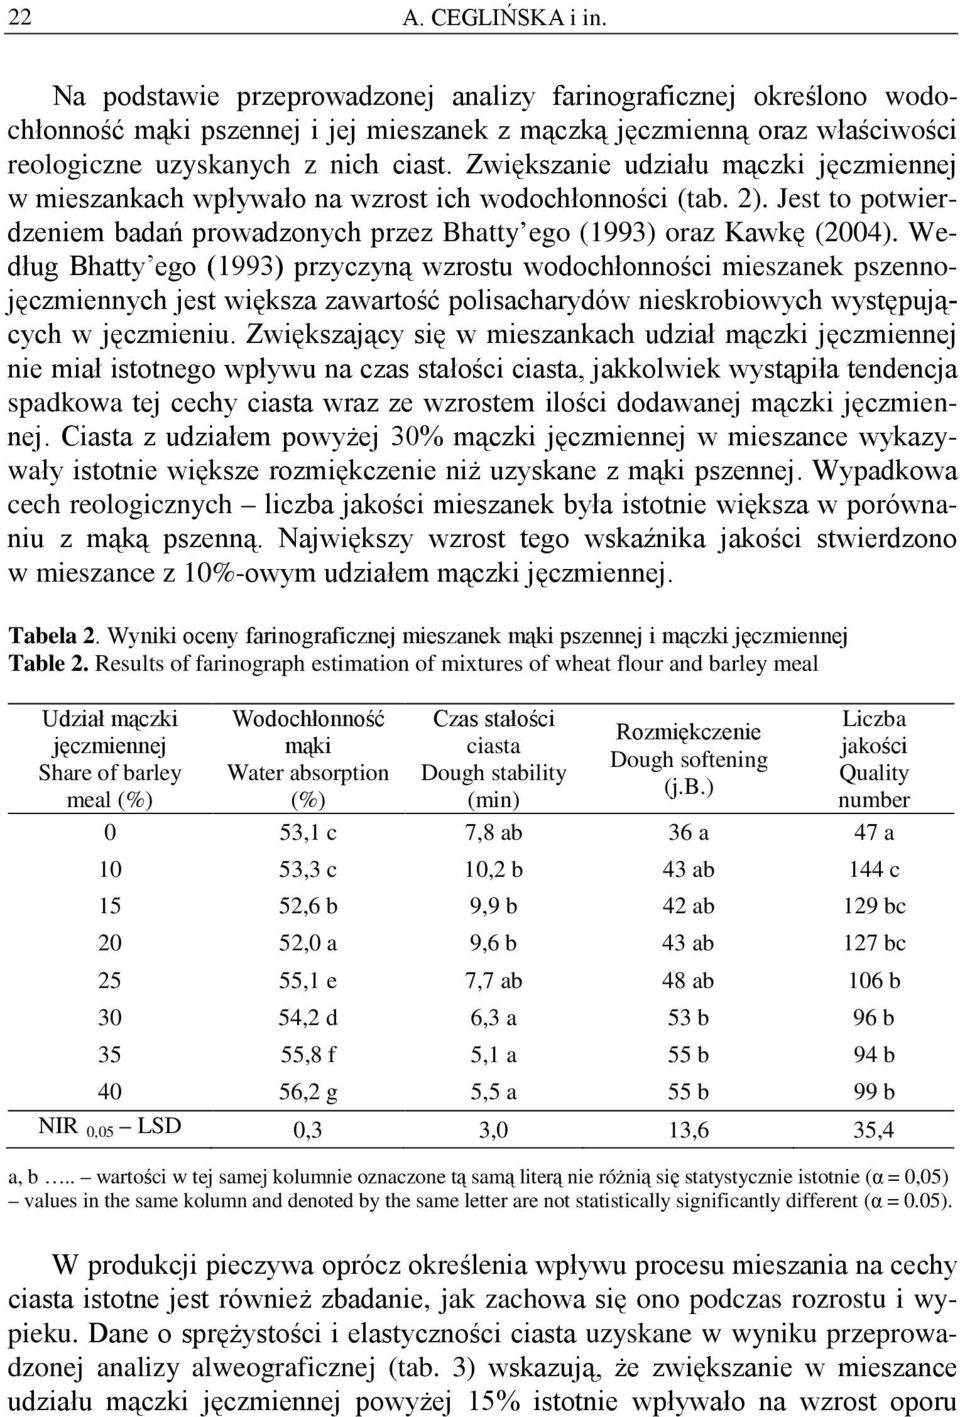 Zwiększanie udziału mączki jęczmiennej w mieszankach wpływało na wzrost ich wodochłonności (tab. 2). Jest to potwierdzeniem badań prowadzonych przez Bhatty ego (1993) oraz Kawkę (2004).